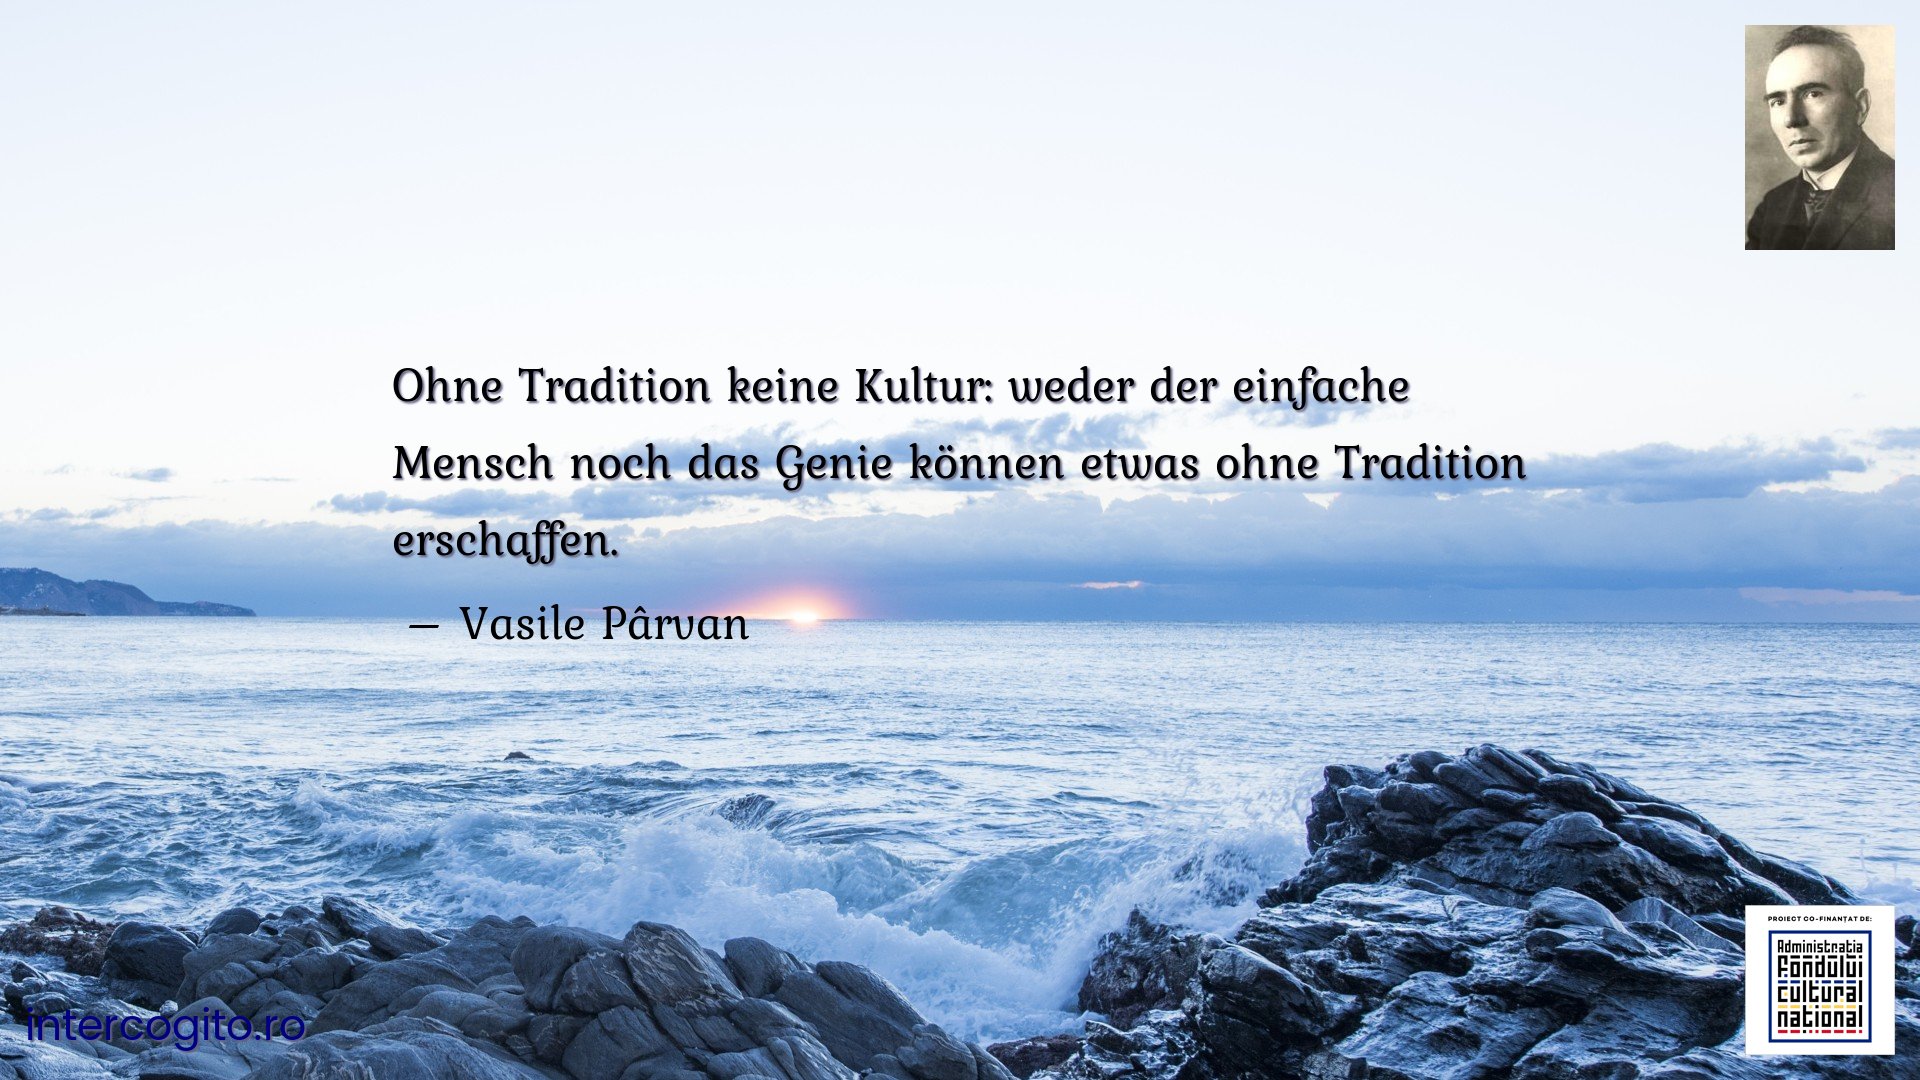 Ohne Tradition keine Kultur: weder der einfache Mensch noch das Genie können etwas ohne Tradition erschaffen.